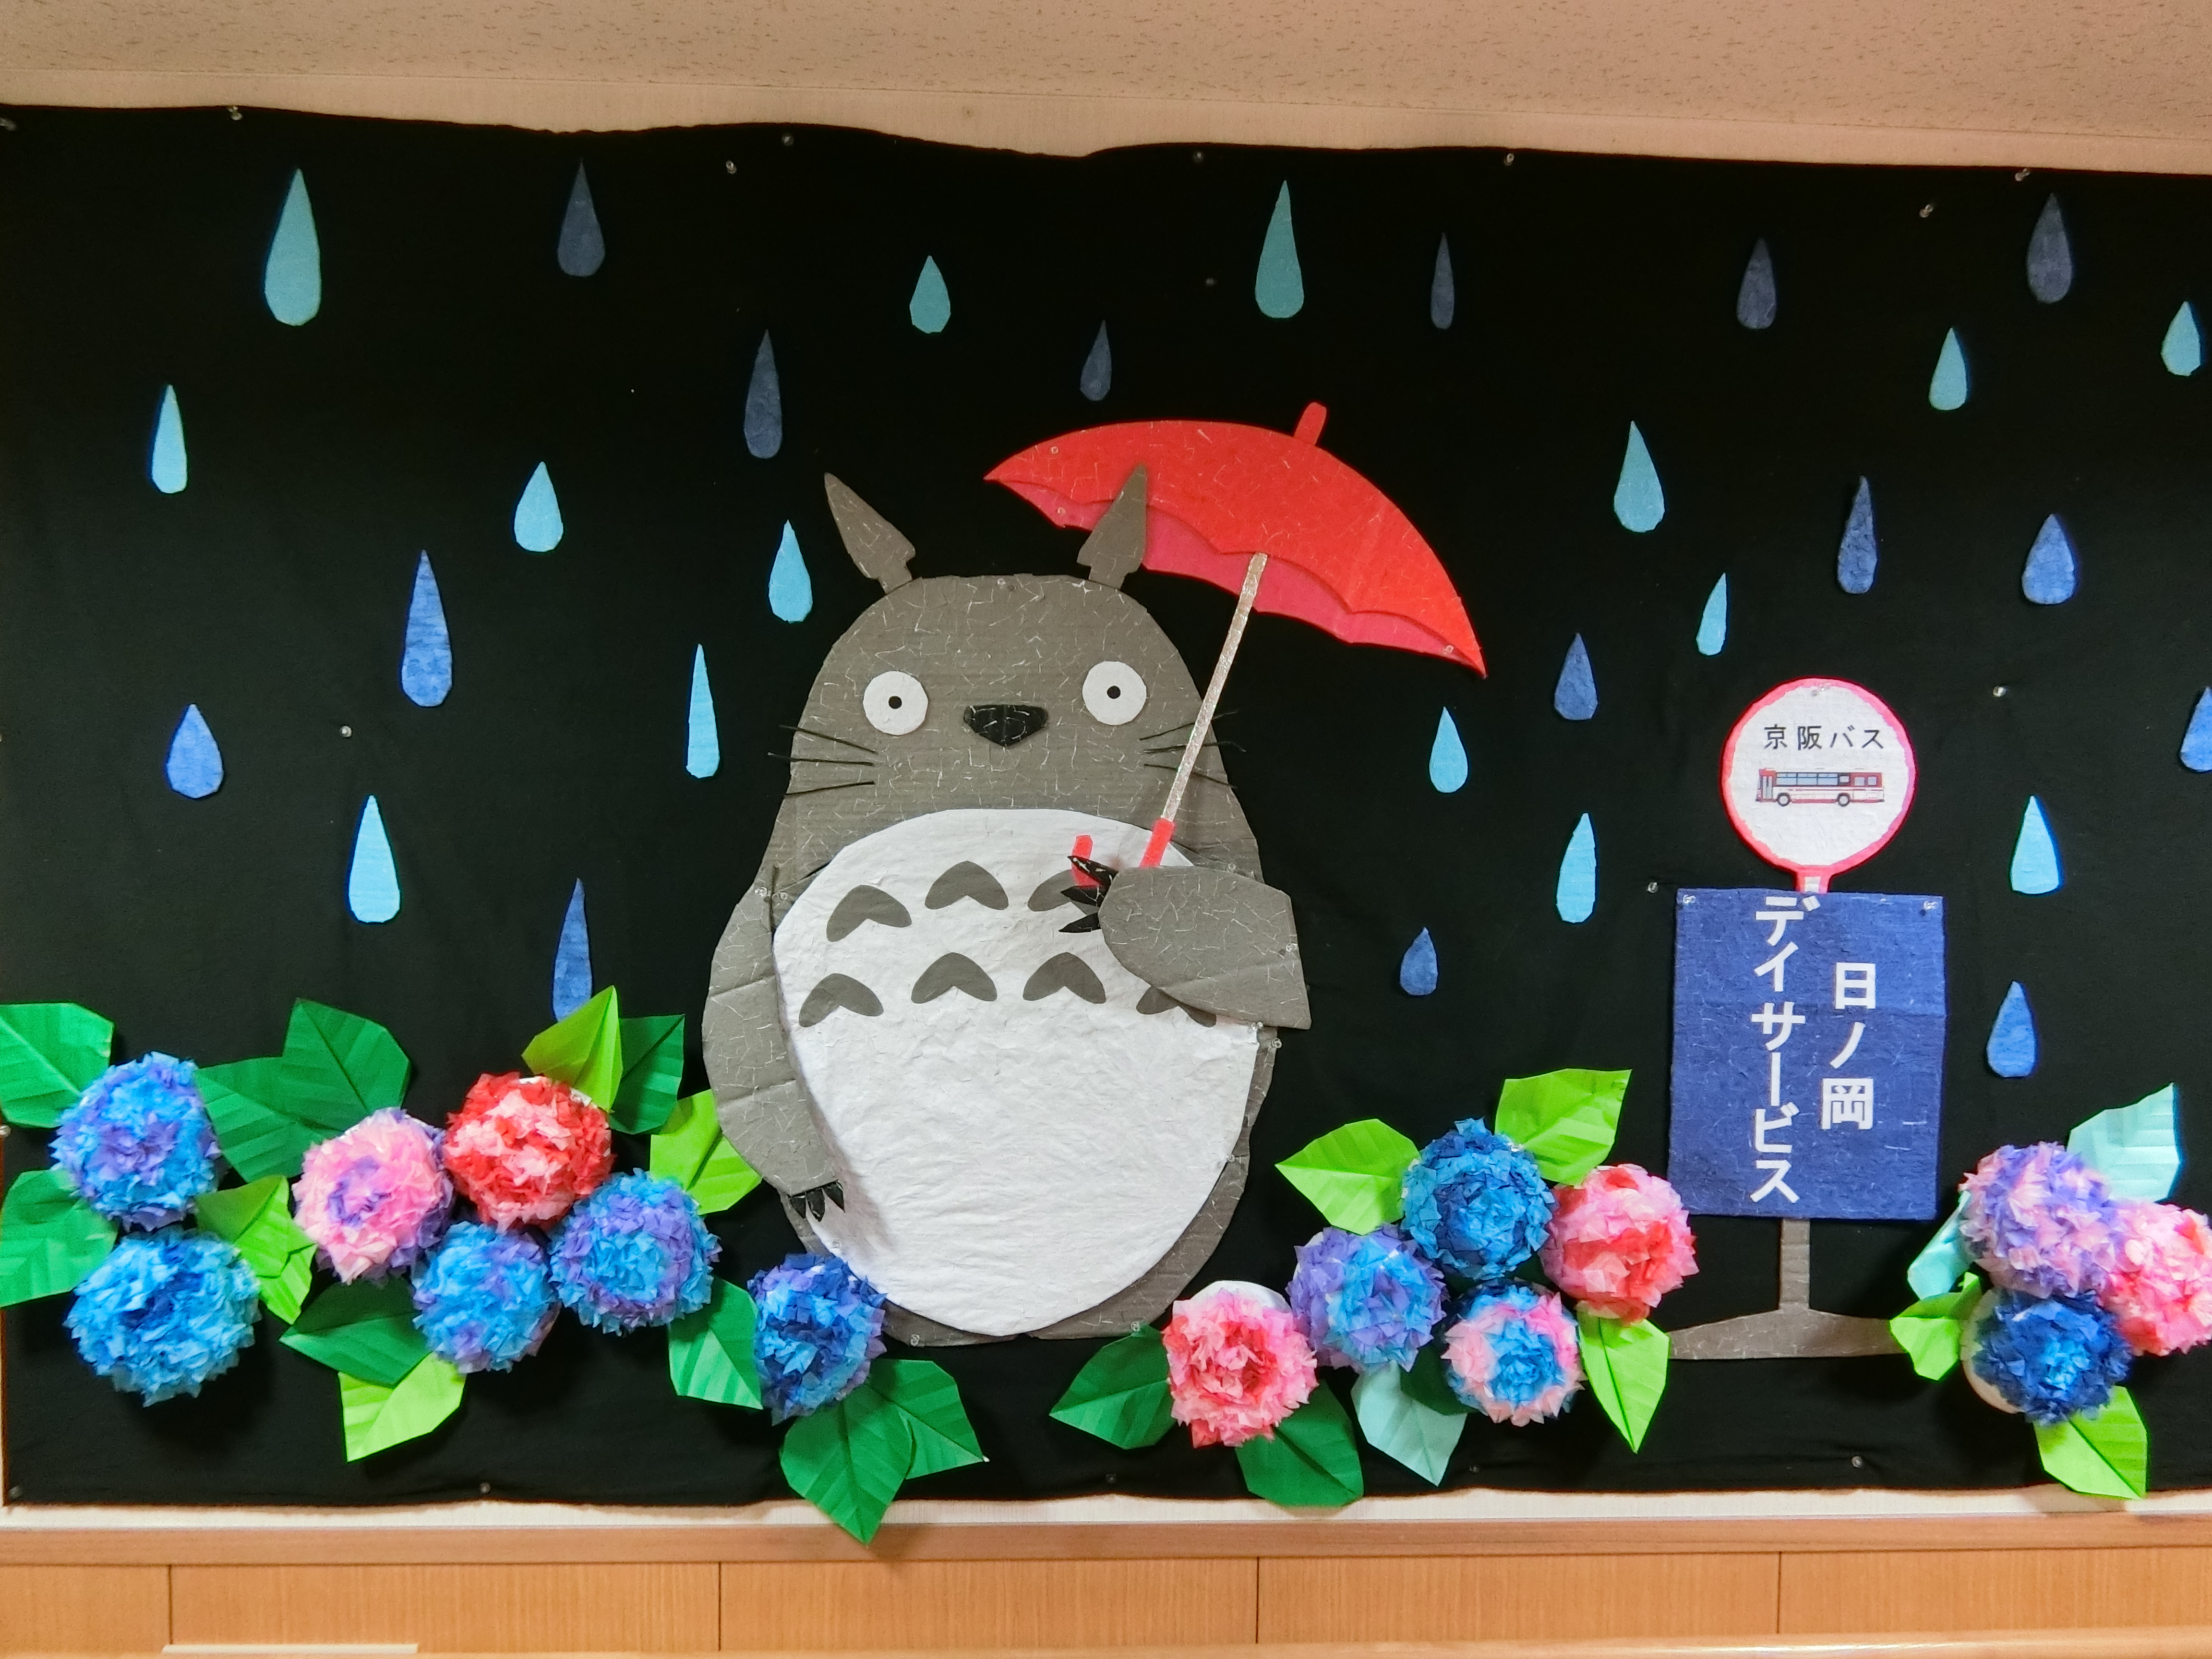 6月の壁面制作が出来上がりました 緑寿会は京都山科 日ノ岡のデイサービス 特別養護老人ホームです